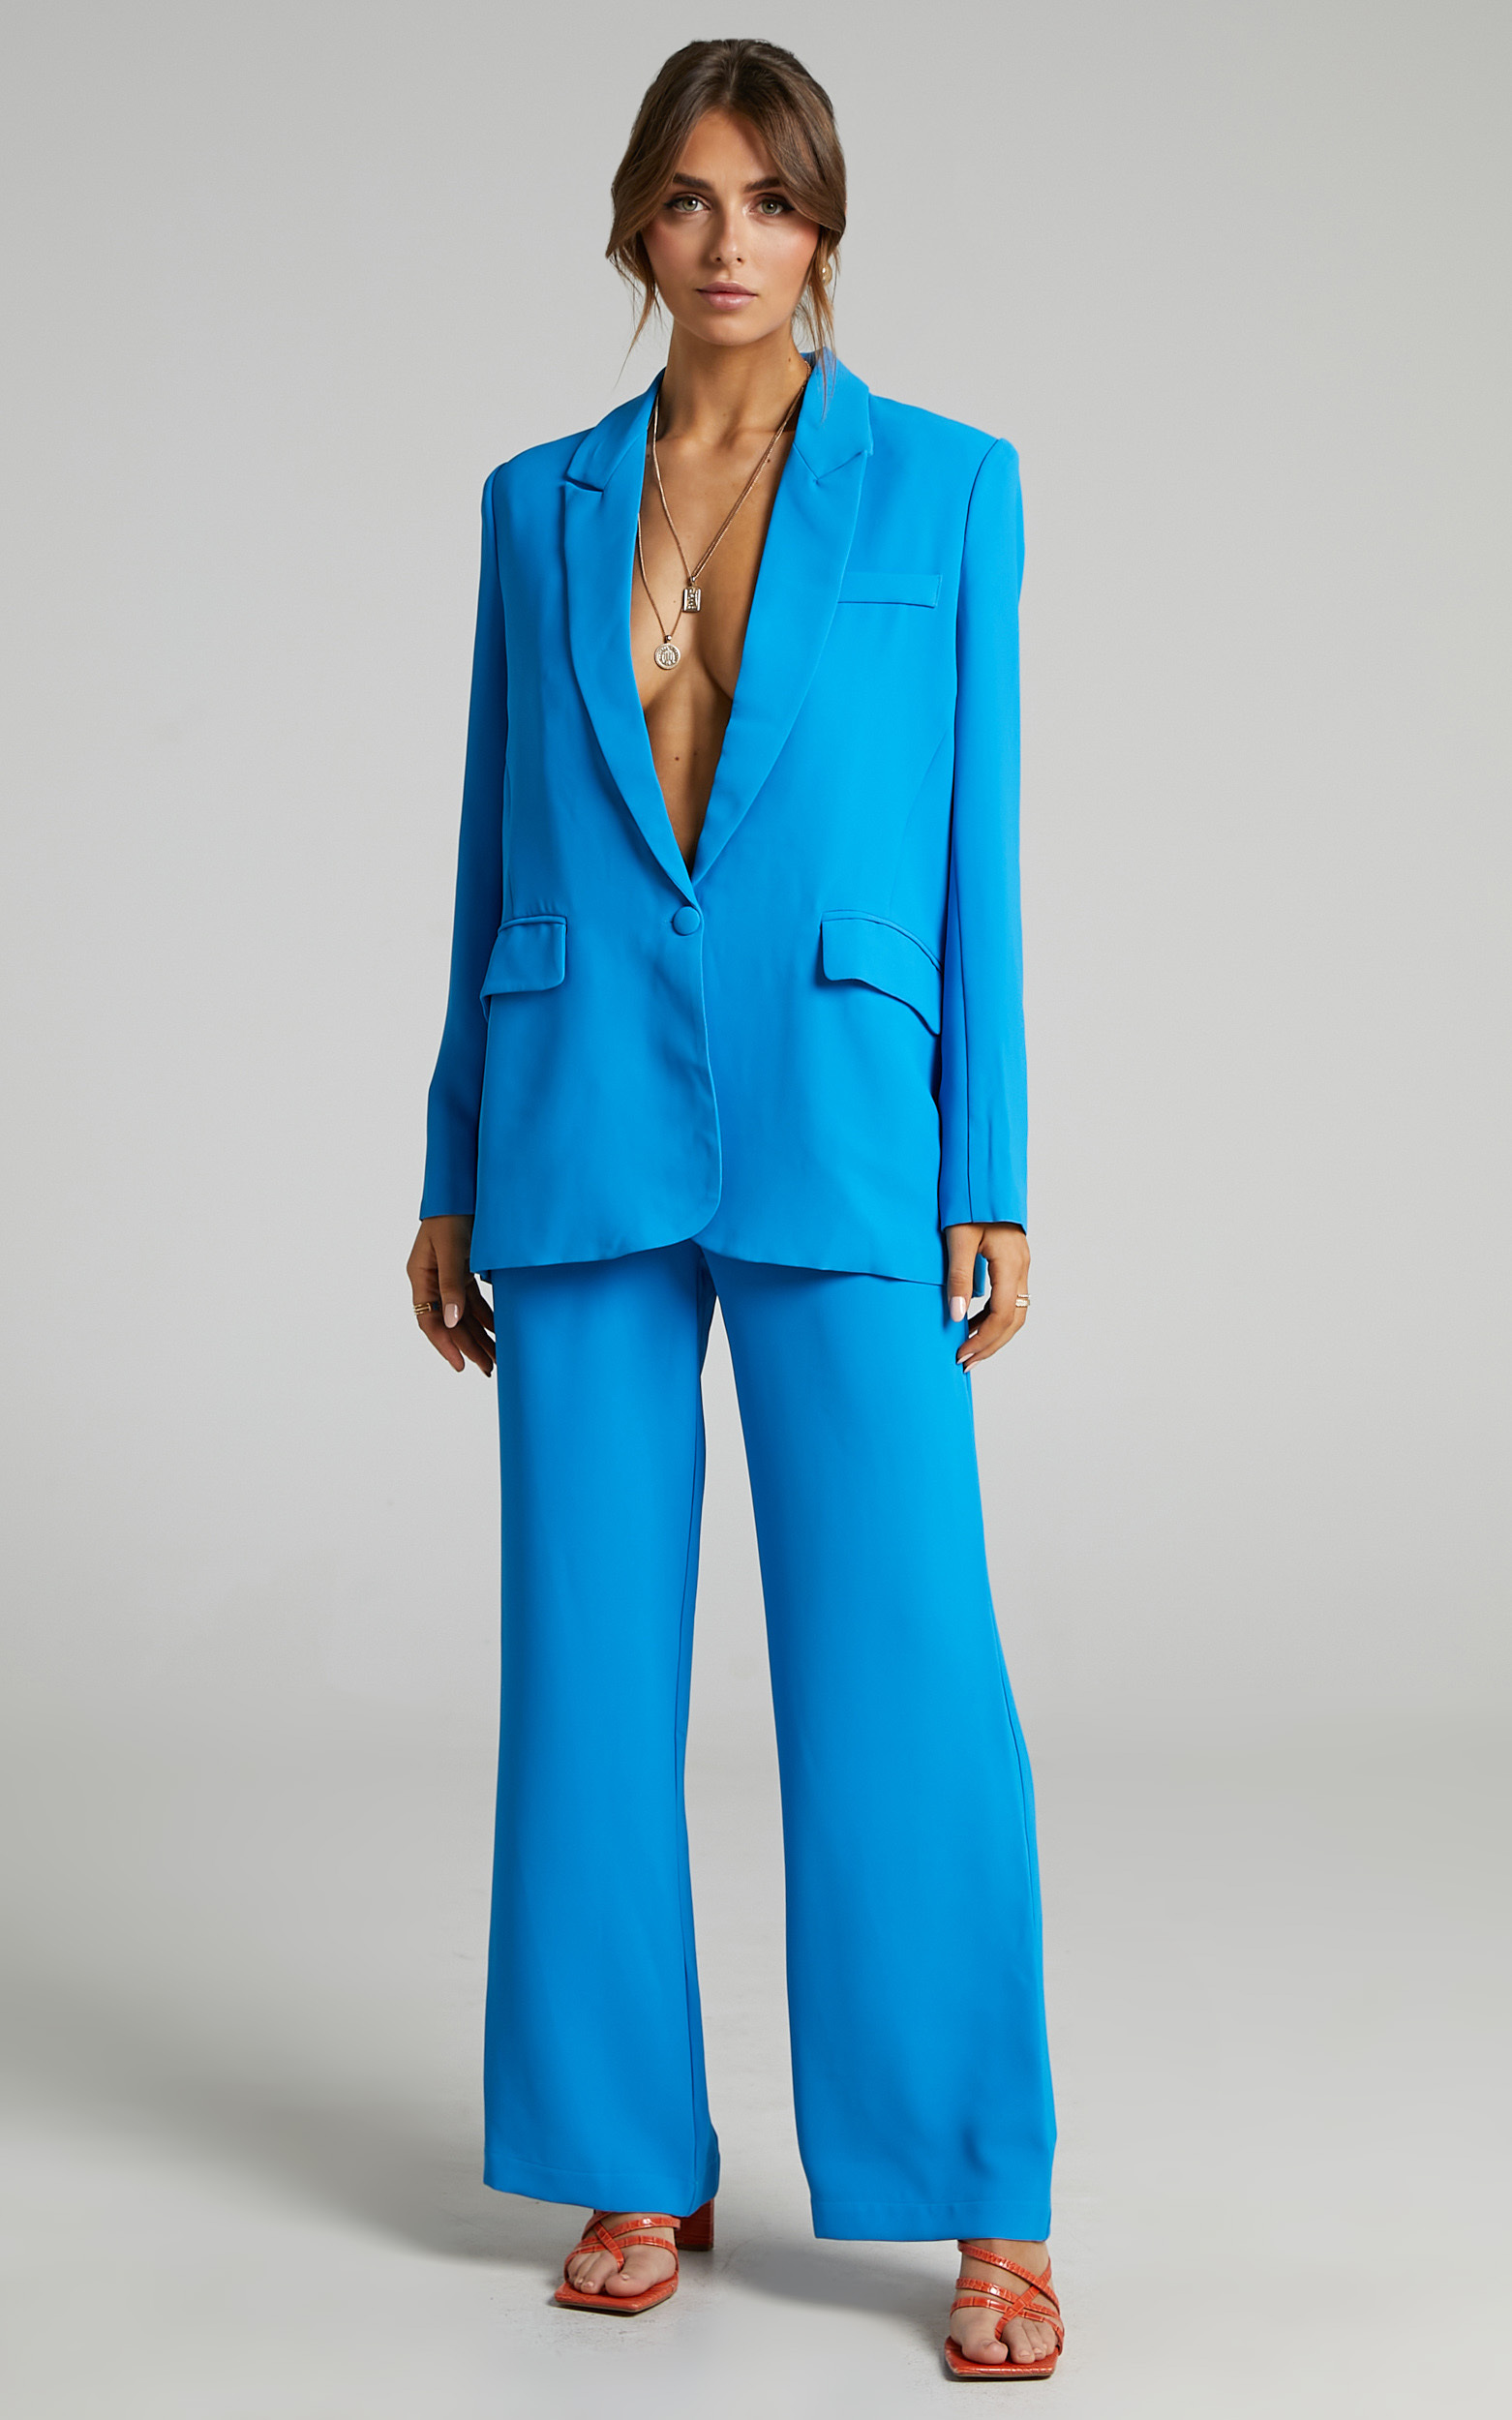 Michelle oversized plunge neckline Button Up Blazer in Blue - 06, BLU1, hi-res image number null